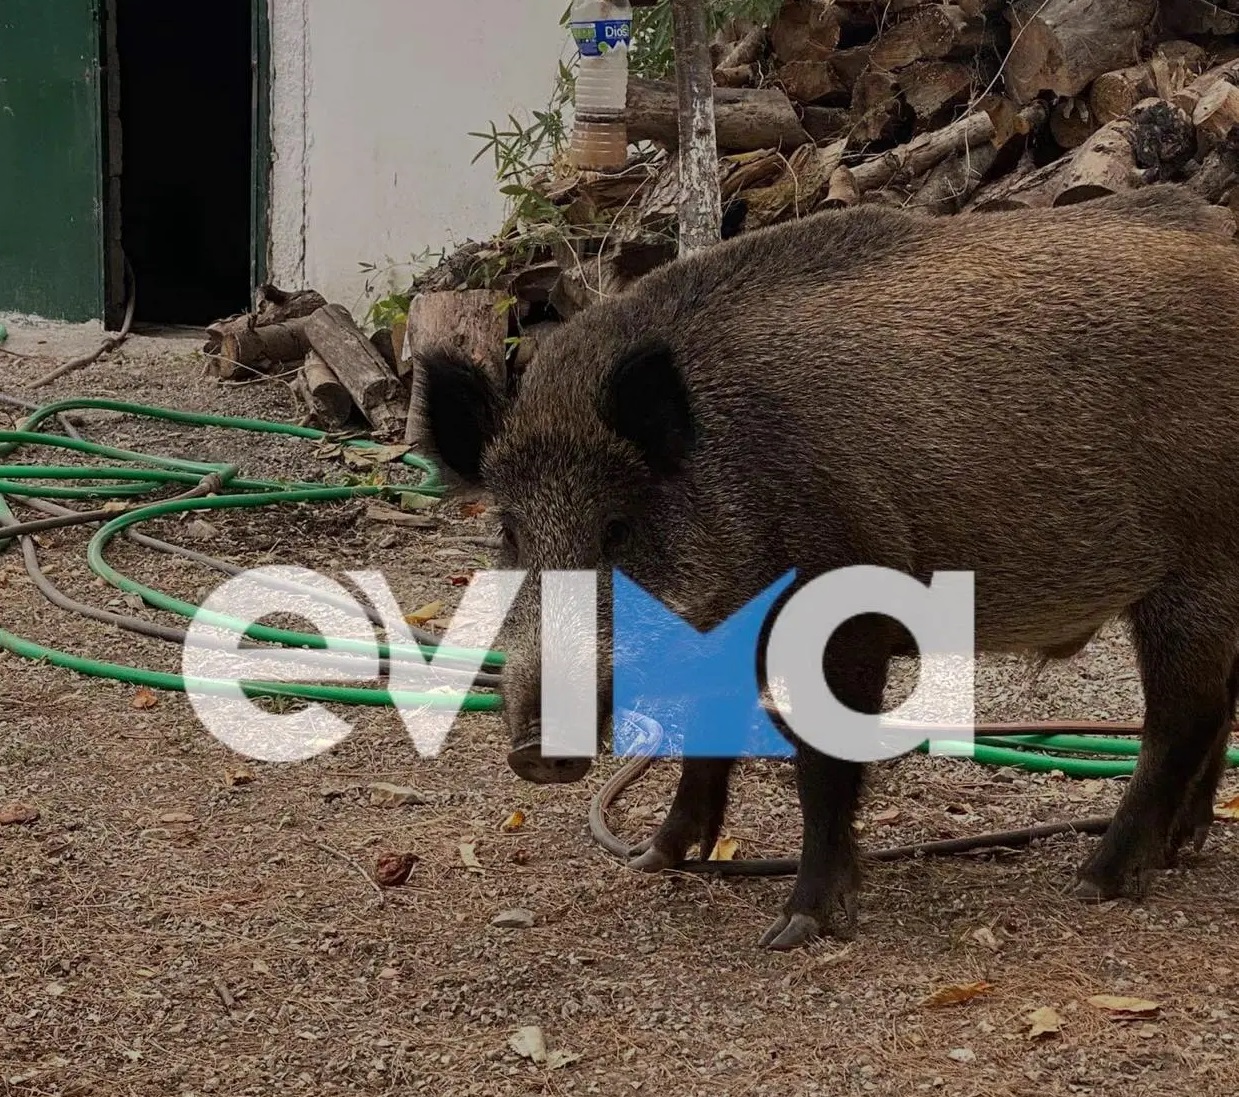 Βόρεια Εύβοια: Απολαυστικό βίντεο με αγριογούρουνο να… τρώει σε ταβέρνα